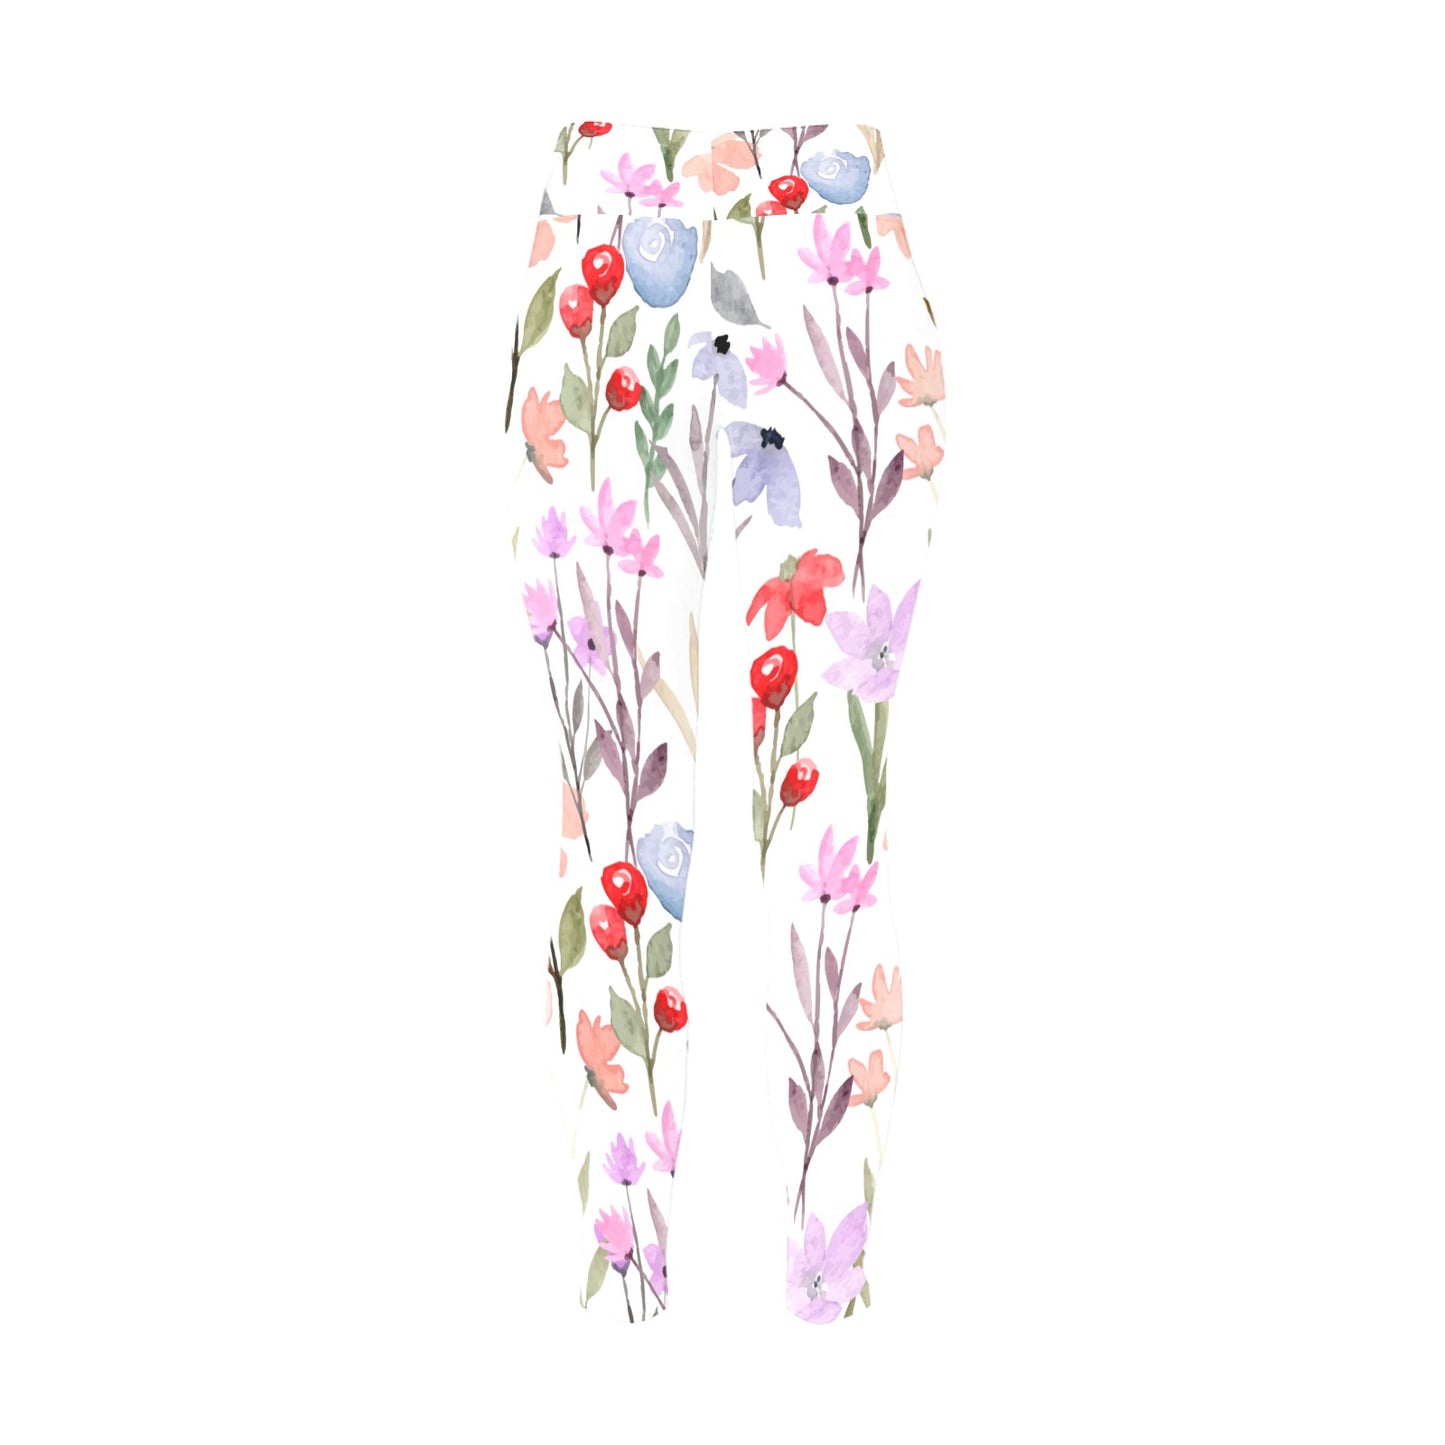 Floral Watercolour - Women's Plus Size High Waist Leggings Women's Plus Size High Waist Leggings